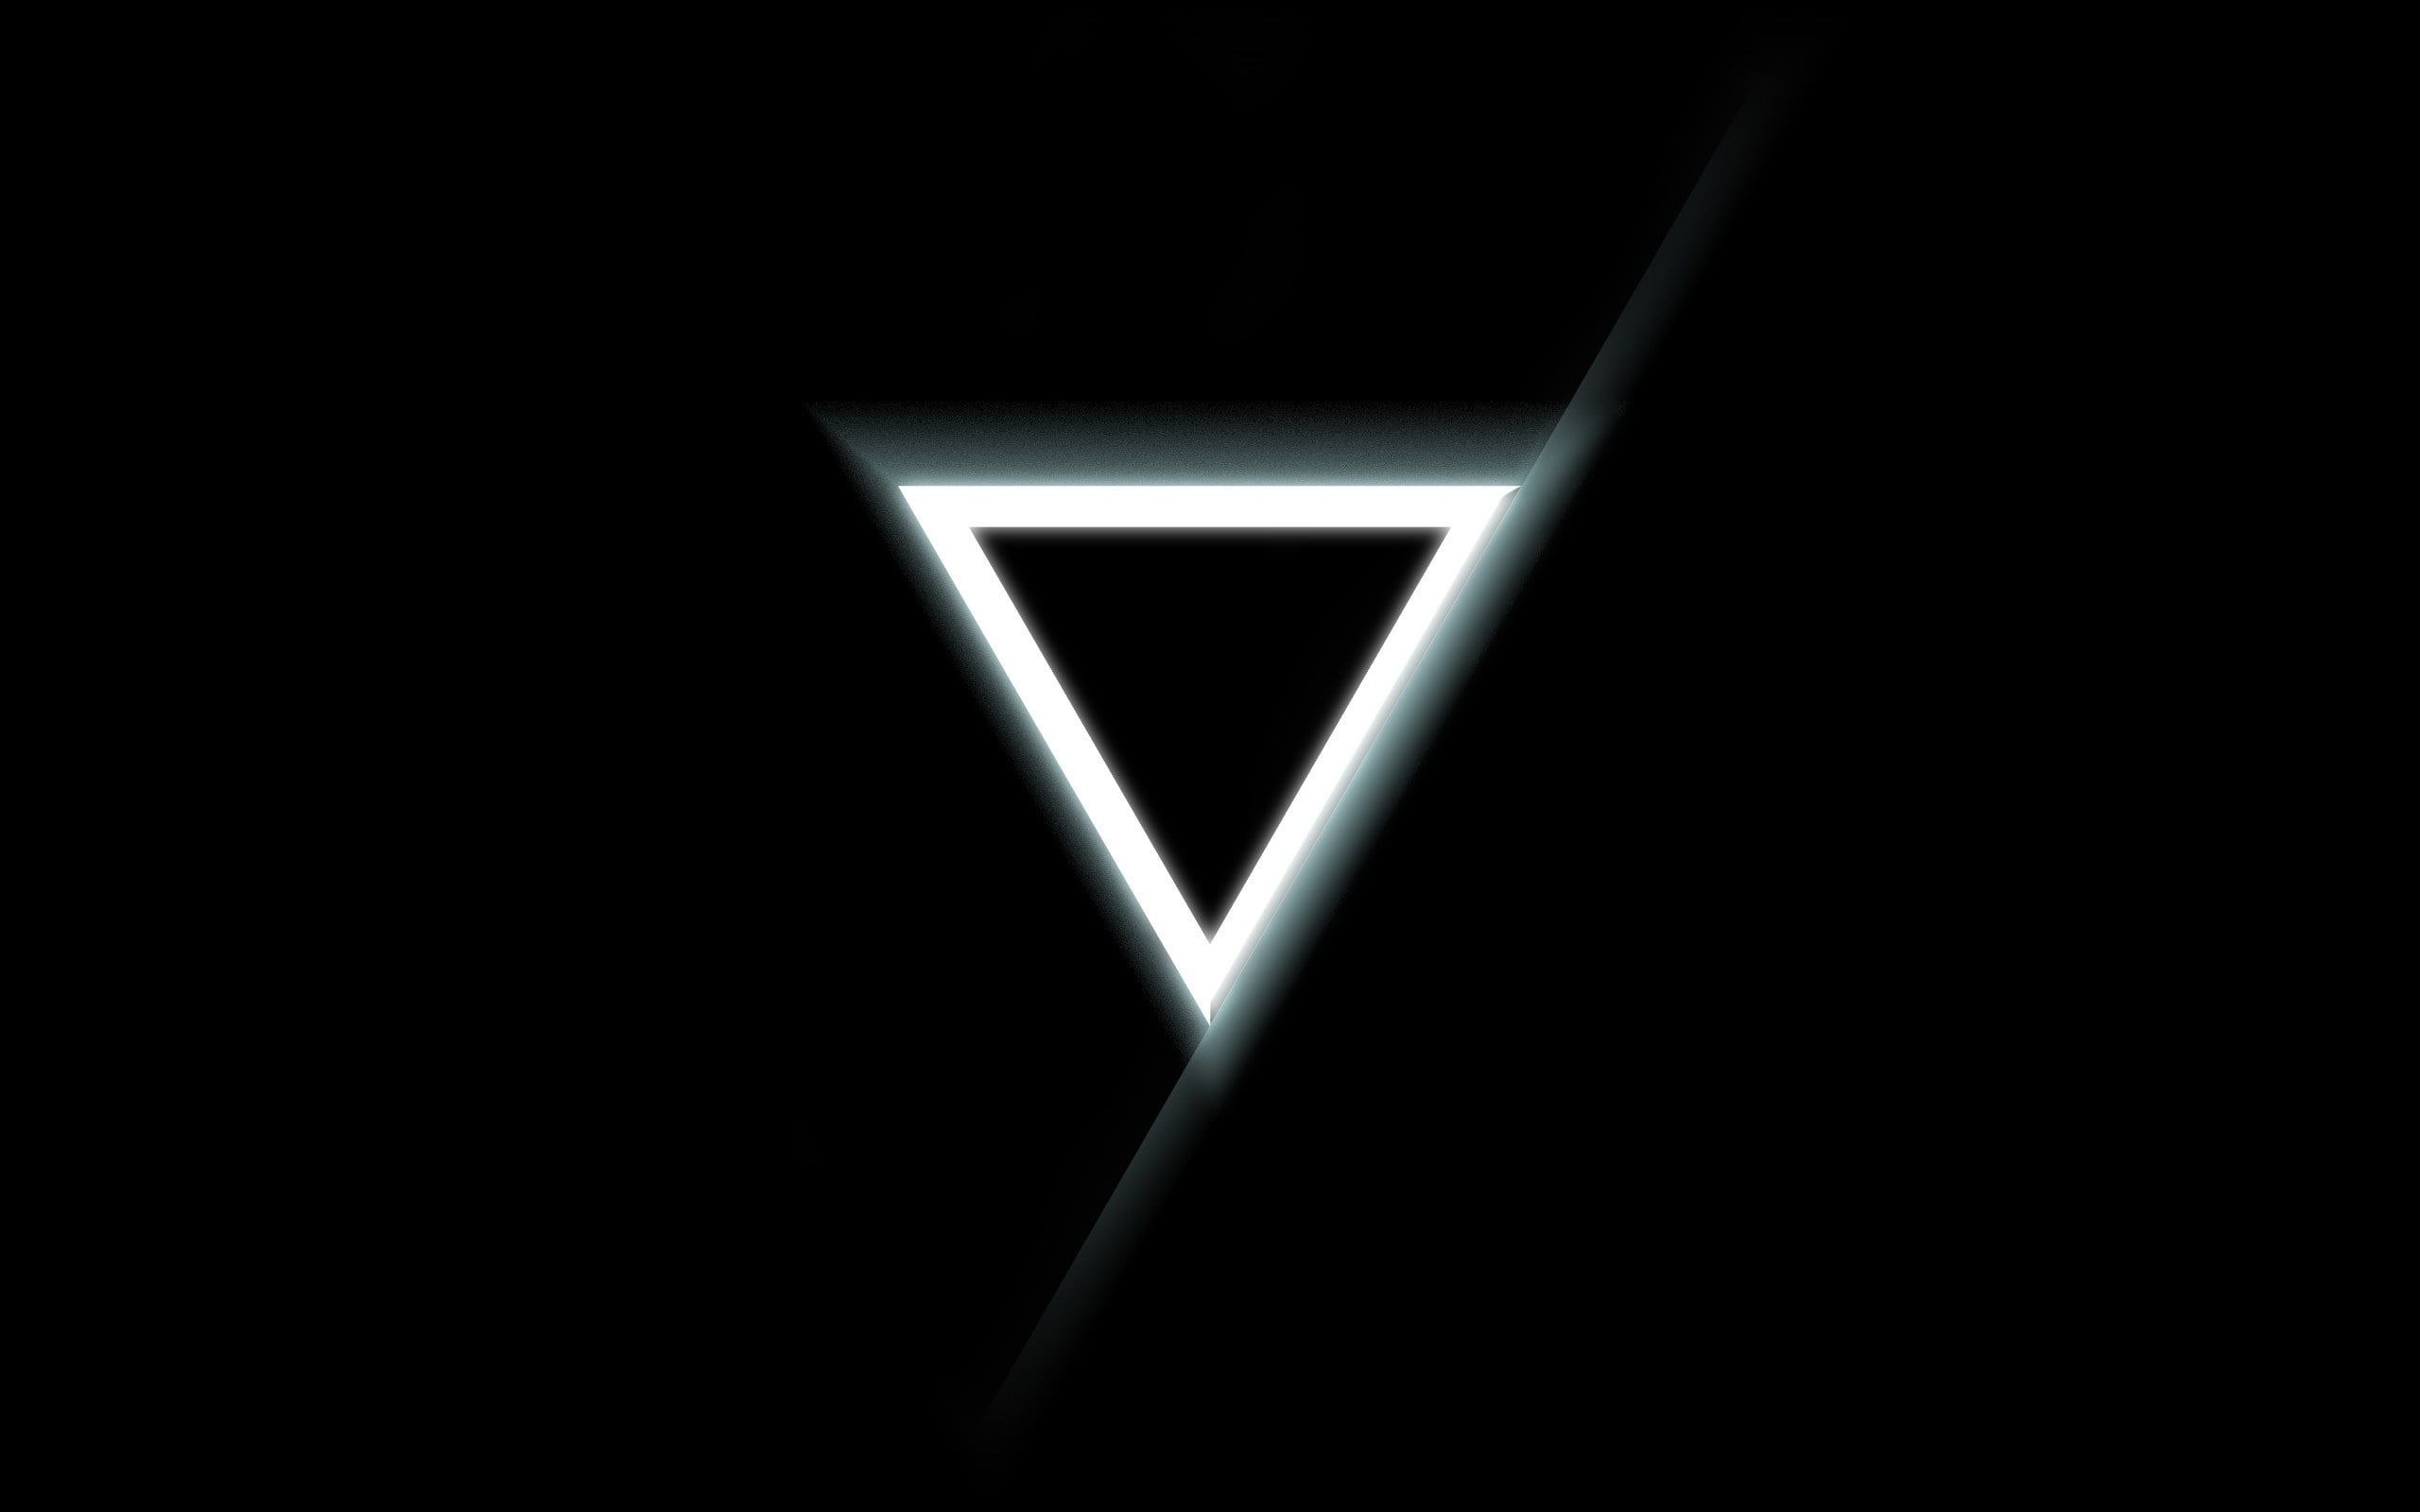 Triangle, Inverted, Black, White, black background, illuminated